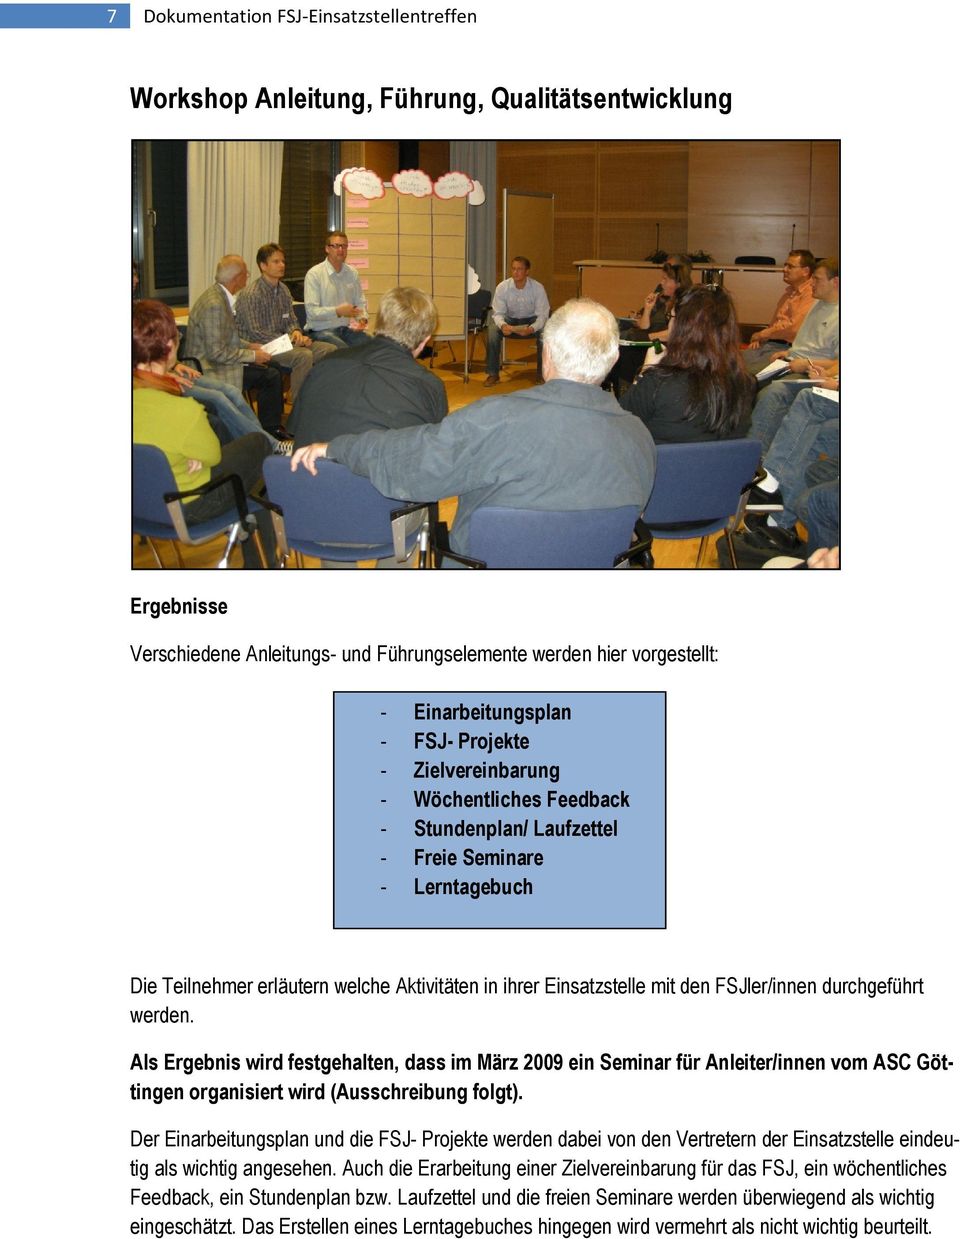 FSJler/innen durchgeführt werden. Als Ergebnis wird festgehalten, dass im März 2009 ein Seminar für Anleiter/innen vom ASC Göttingen organisiert wird (Ausschreibung folgt).